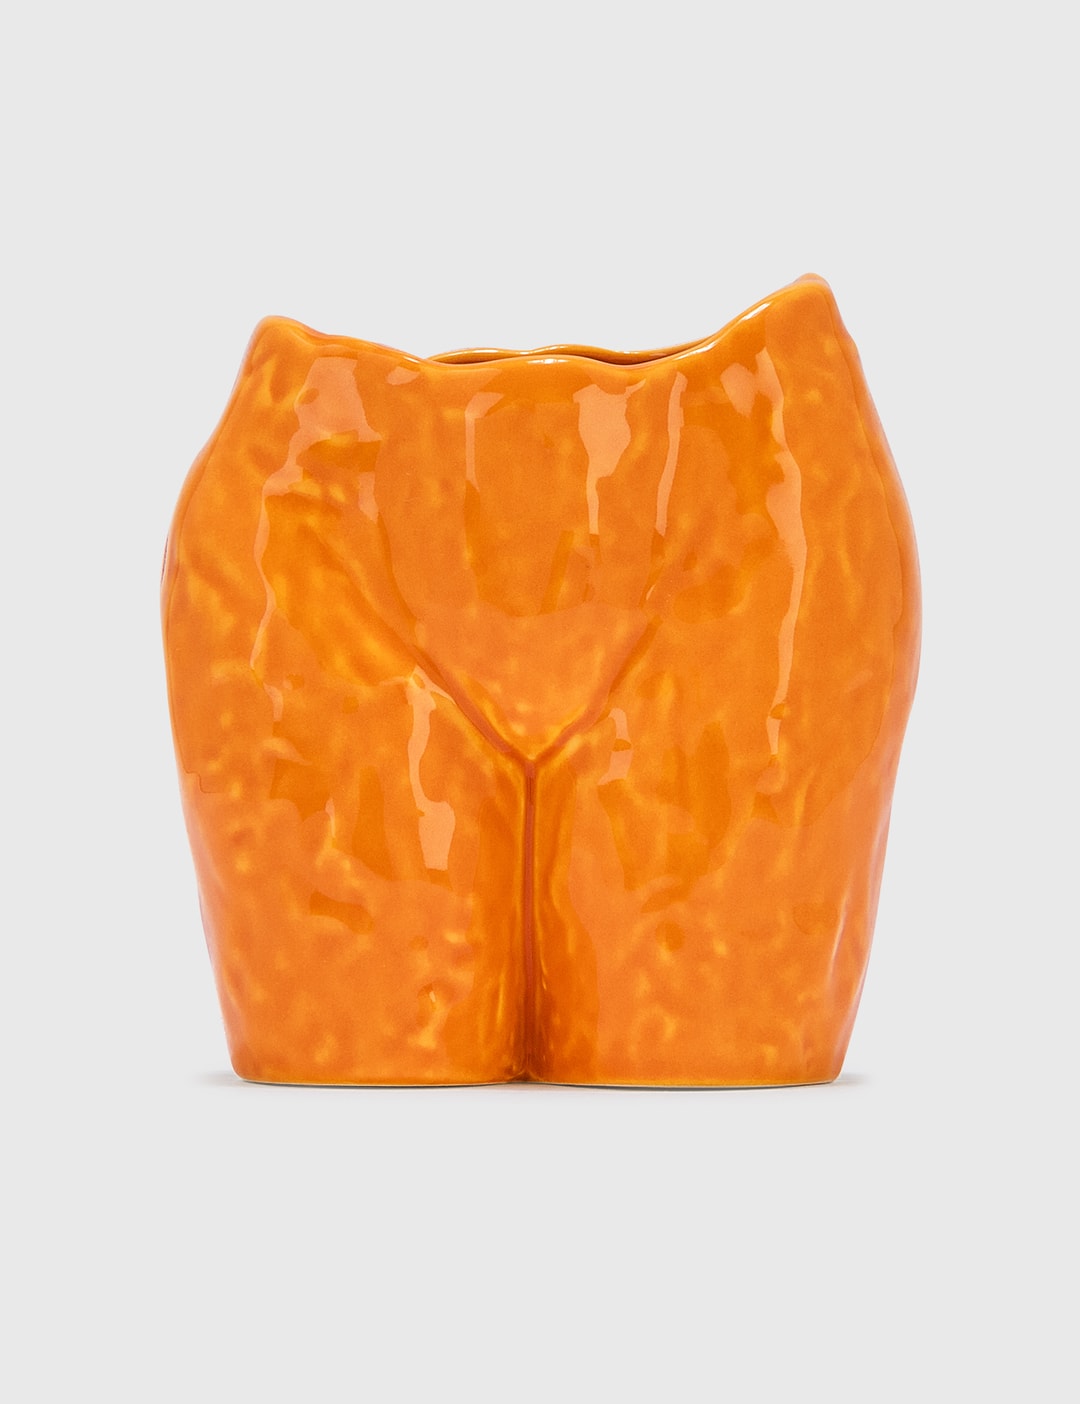 Popotin Pot Orange Shiny Placeholder Image